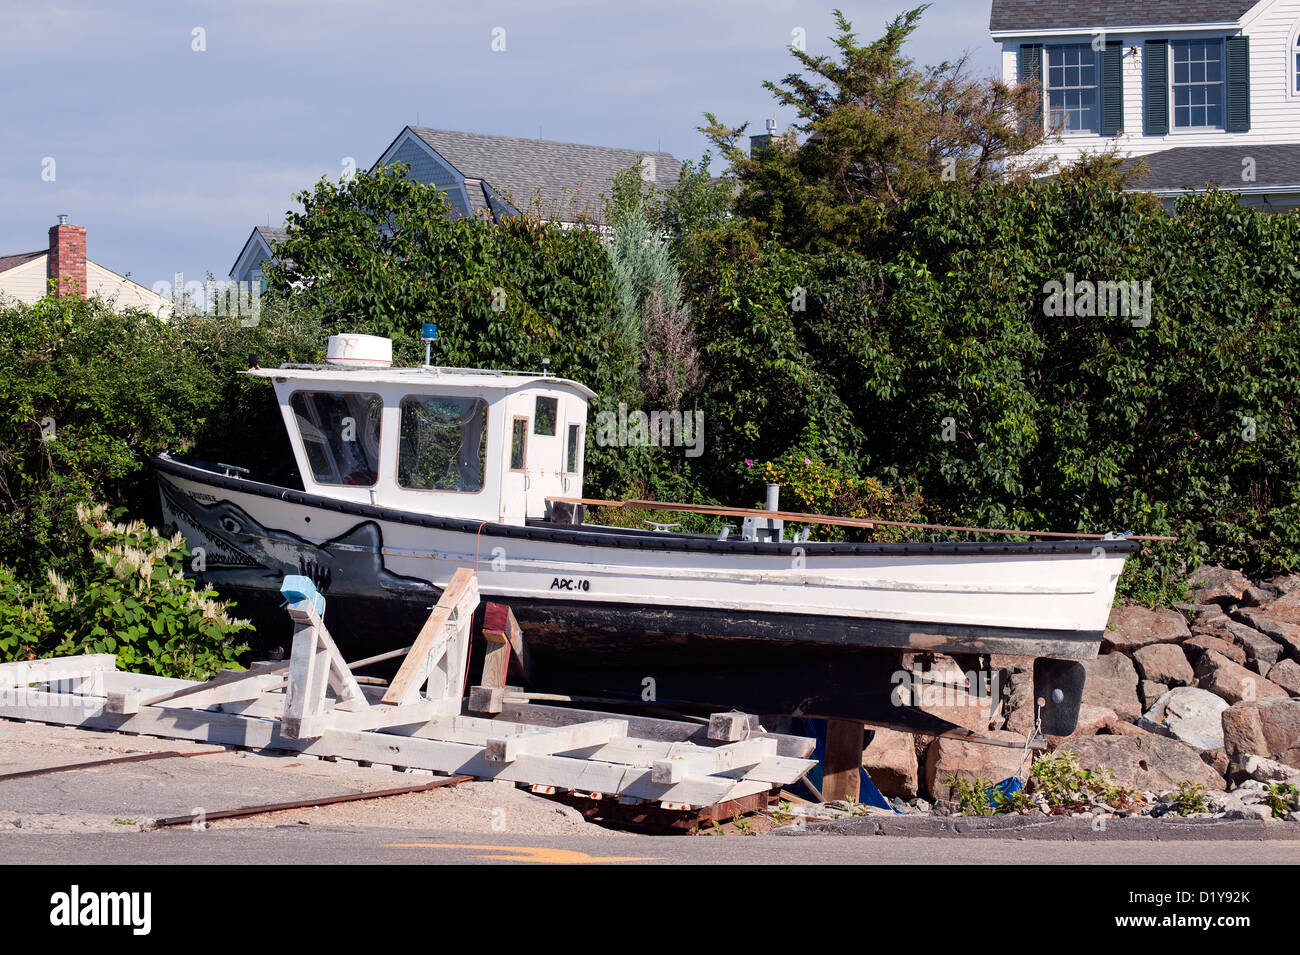 Angelboot/Fischerboot im Trockendock. Perkins Cove, Ogunquit, Maine. Stockfoto